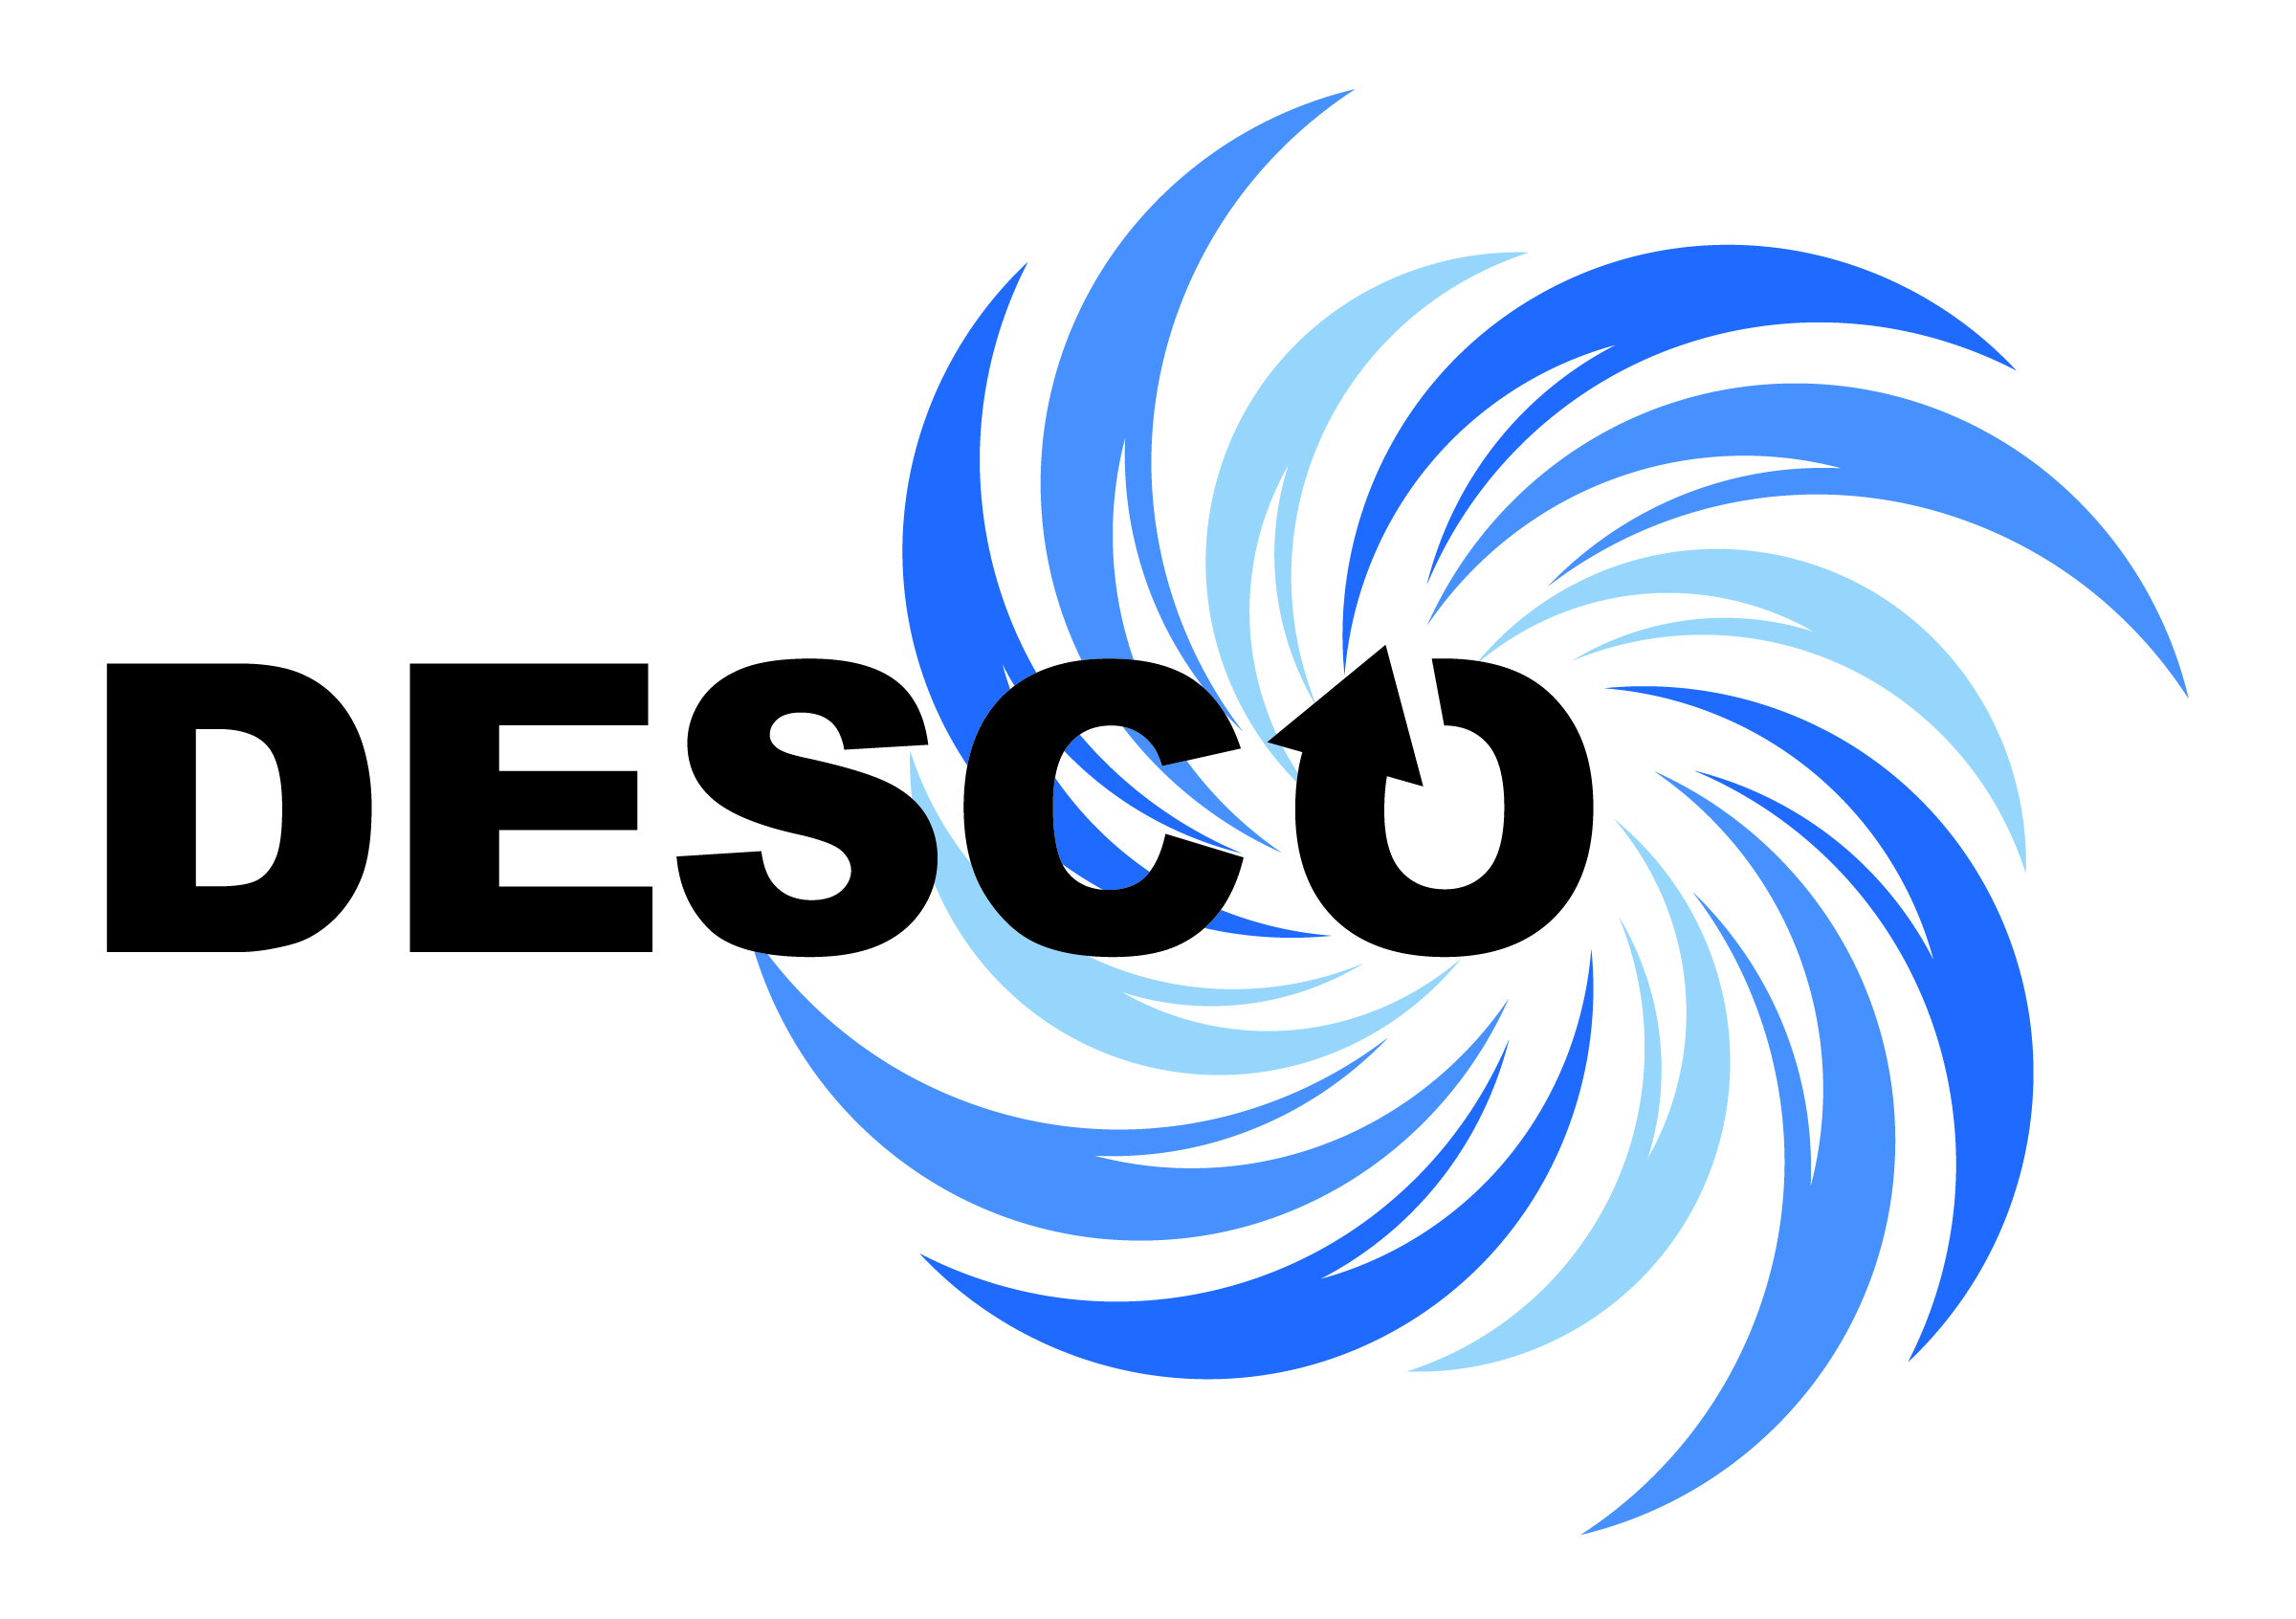 Desco Group